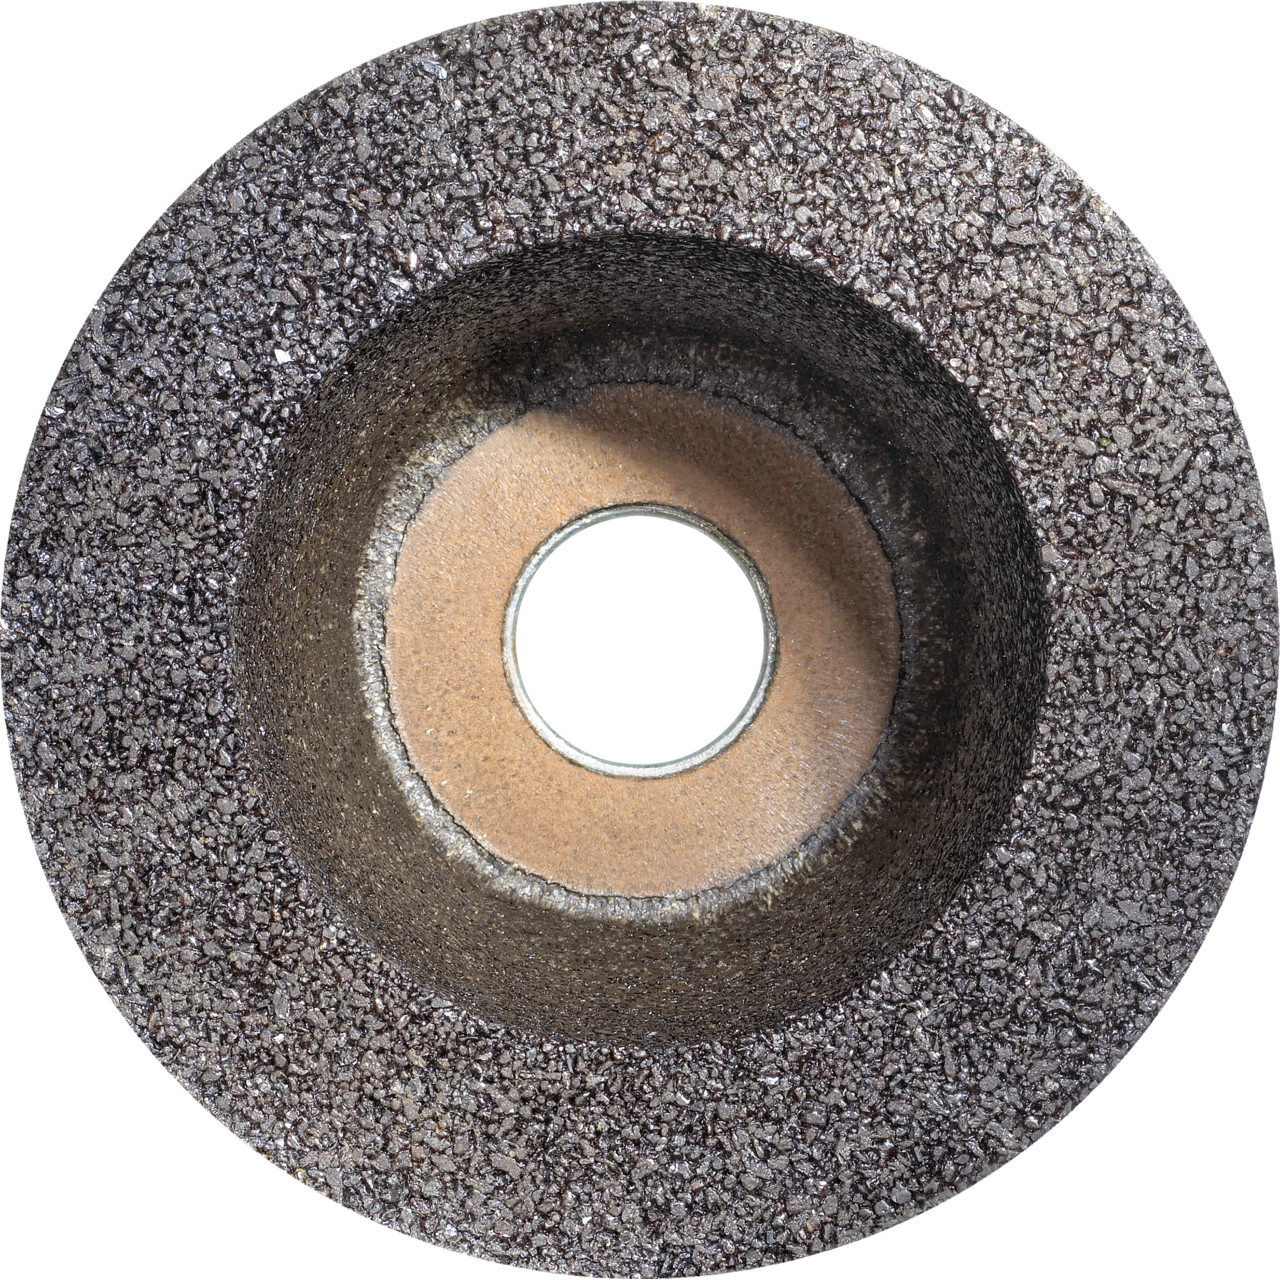 Tazza in resina sintetica Tyrolit D/JxDxH 110/90x55x22.2 Per acciaio, forma: 11BT (ruota a tazza), Art. 895678